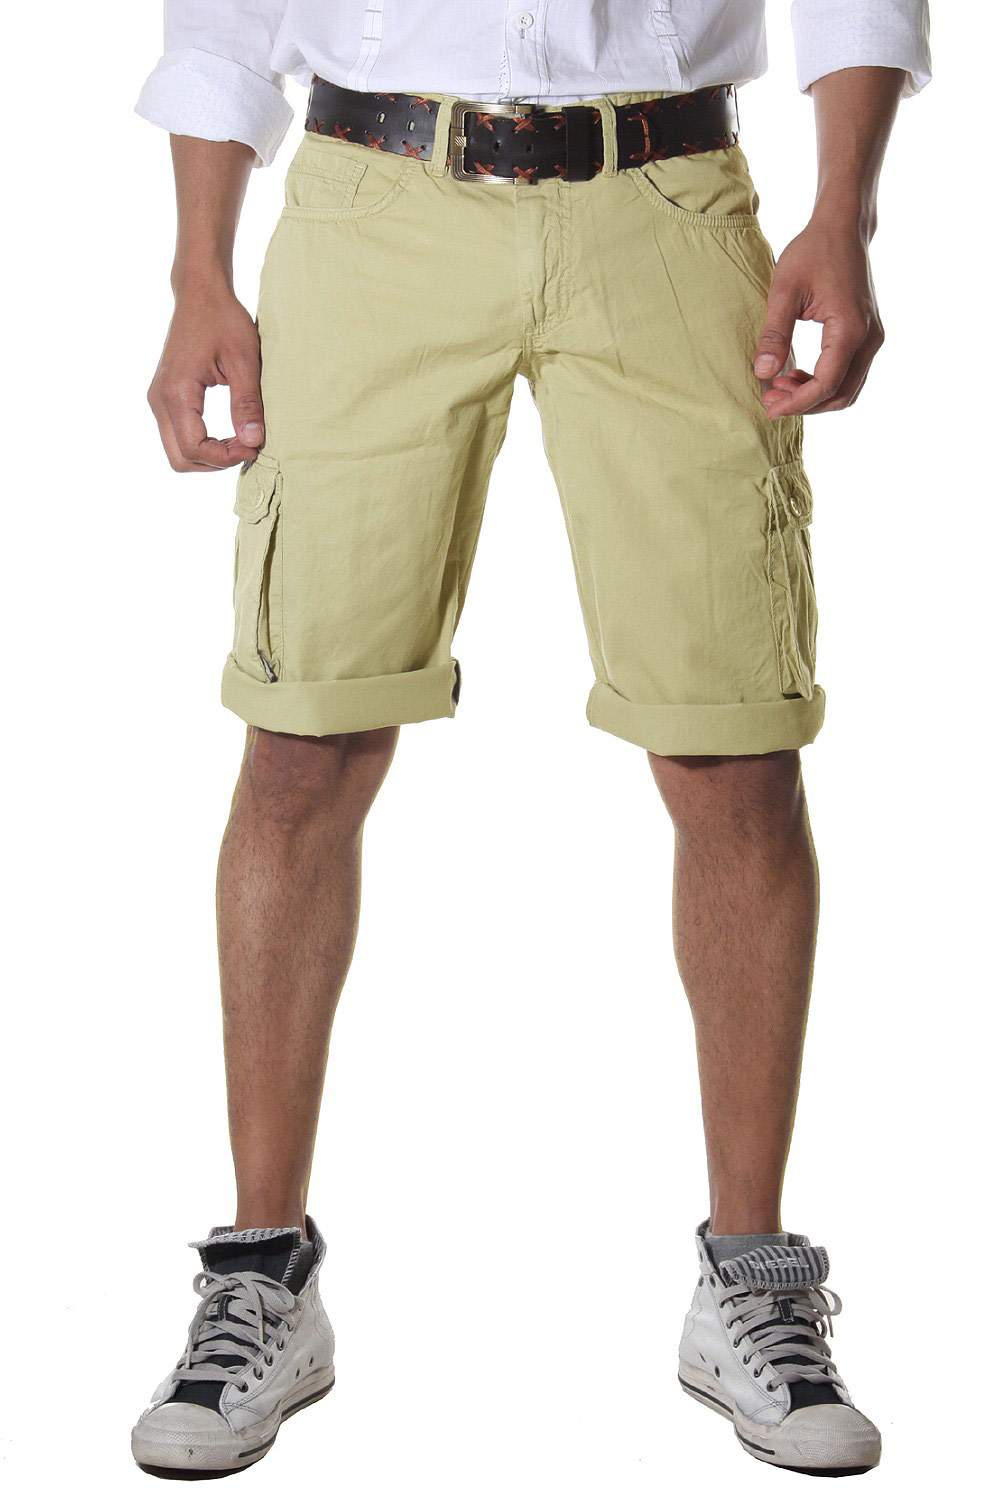 BRIGHT shorts at oboy.com